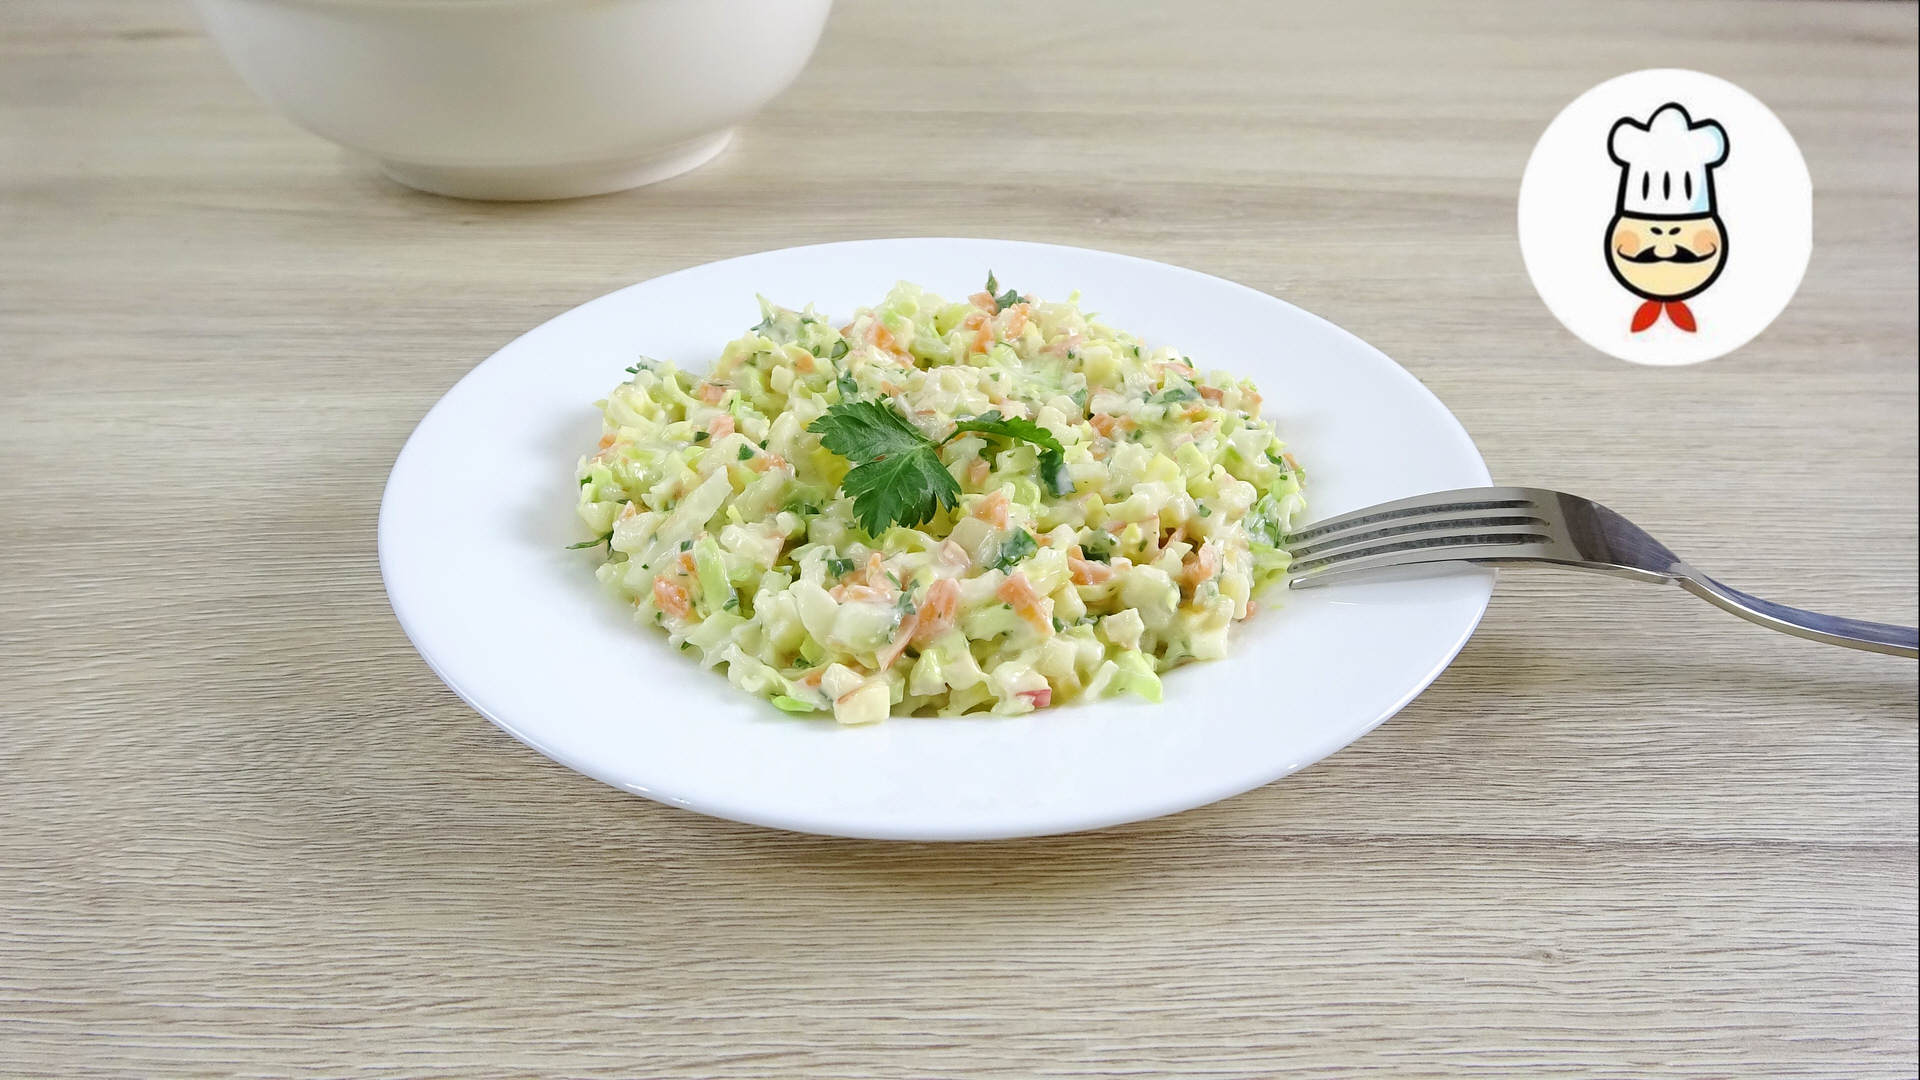 Фото к рецепту: Капустный салат без соли и специй